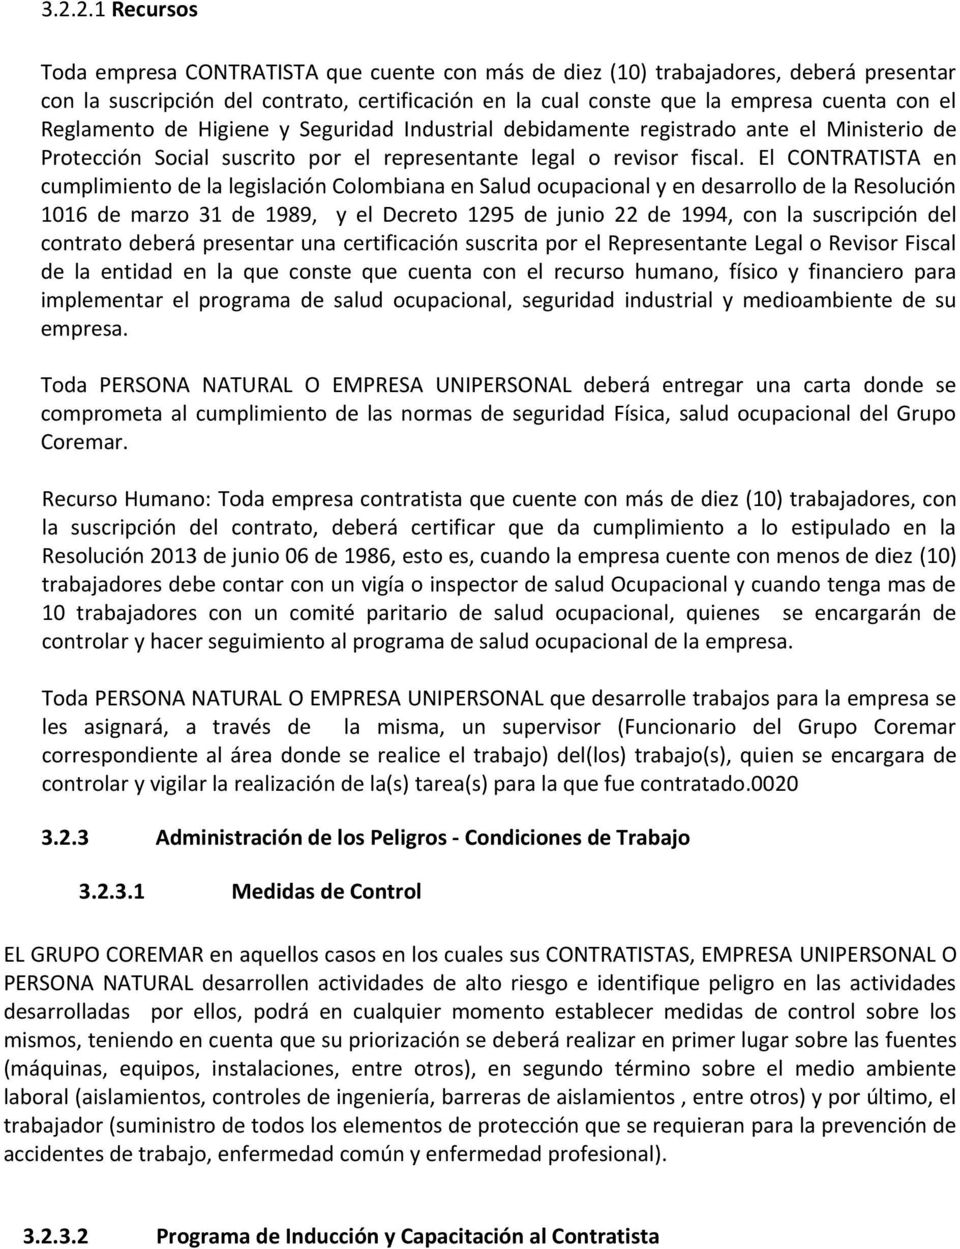 El CONTRATISTA en cumplimiento de la legislación Colombiana en Salud ocupacional y en desarrollo de la Resolución 1016 de marzo 31 de 1989, y el Decreto 1295 de junio 22 de 1994, con la suscripción